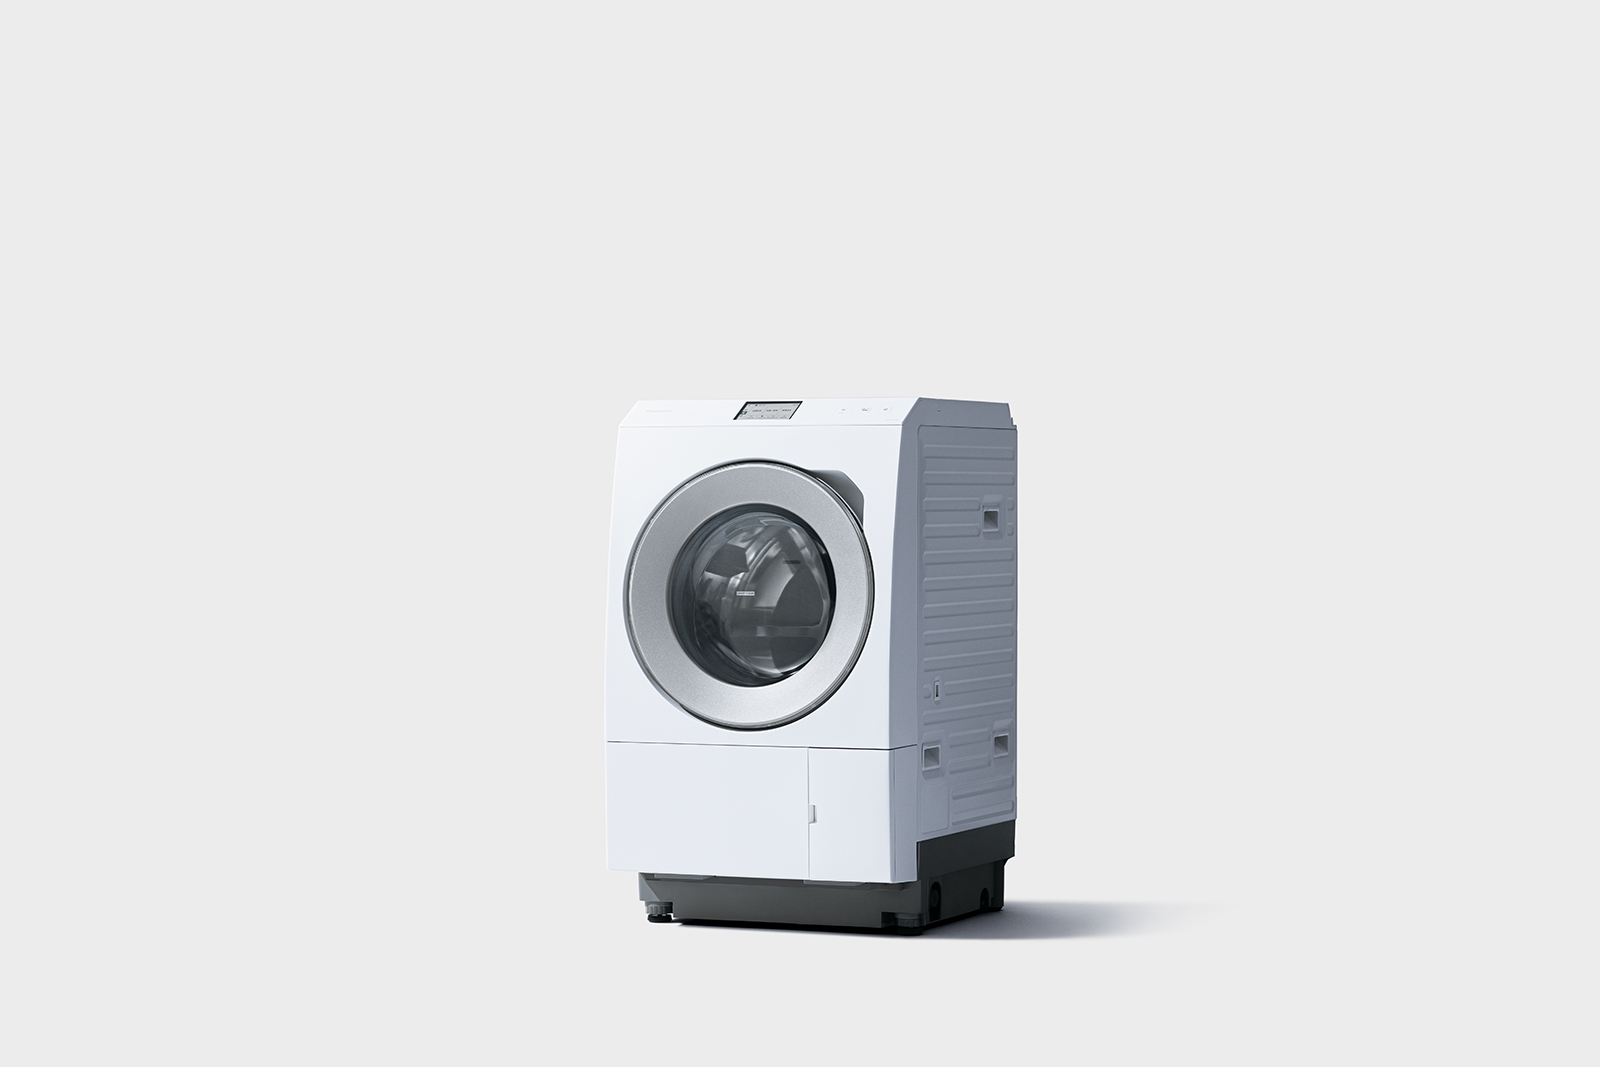 ななめドラム洗濯乾燥機NA-LX129CL他 7機種を発売 | 個人向け商品